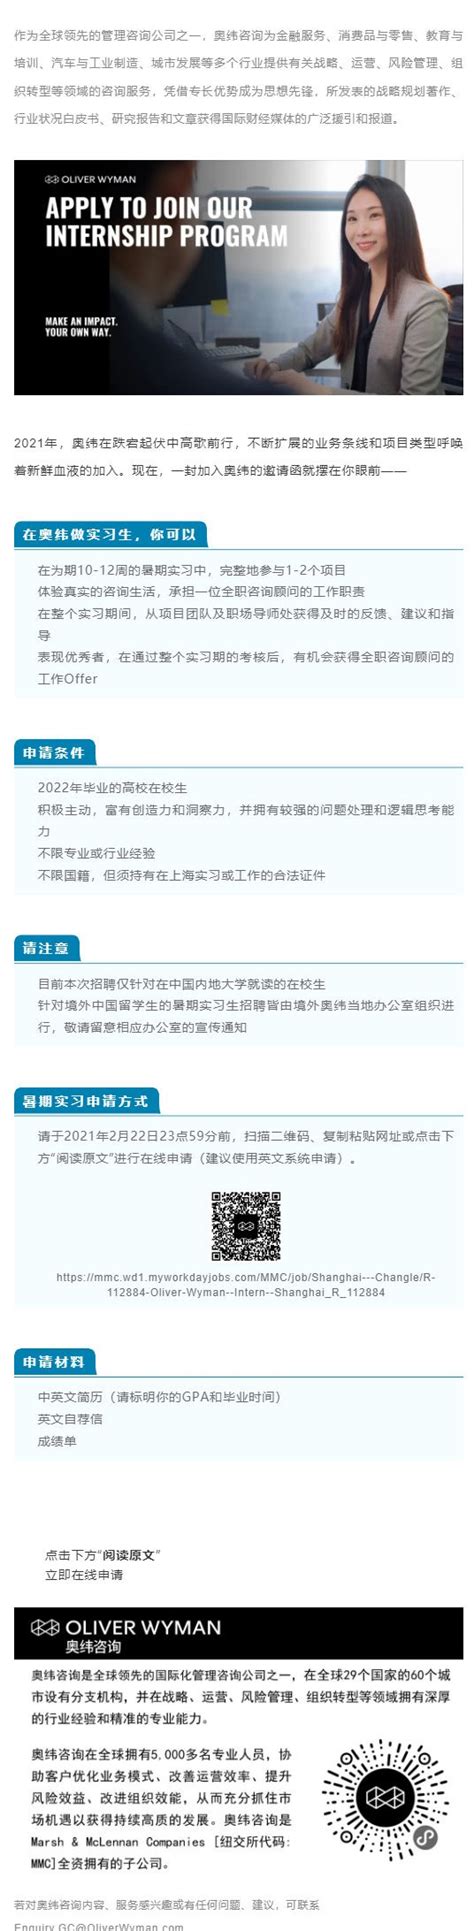 2021年奥纬咨询中国内地暑期实习招聘正式启动-北大光华管理学院职业发展中心